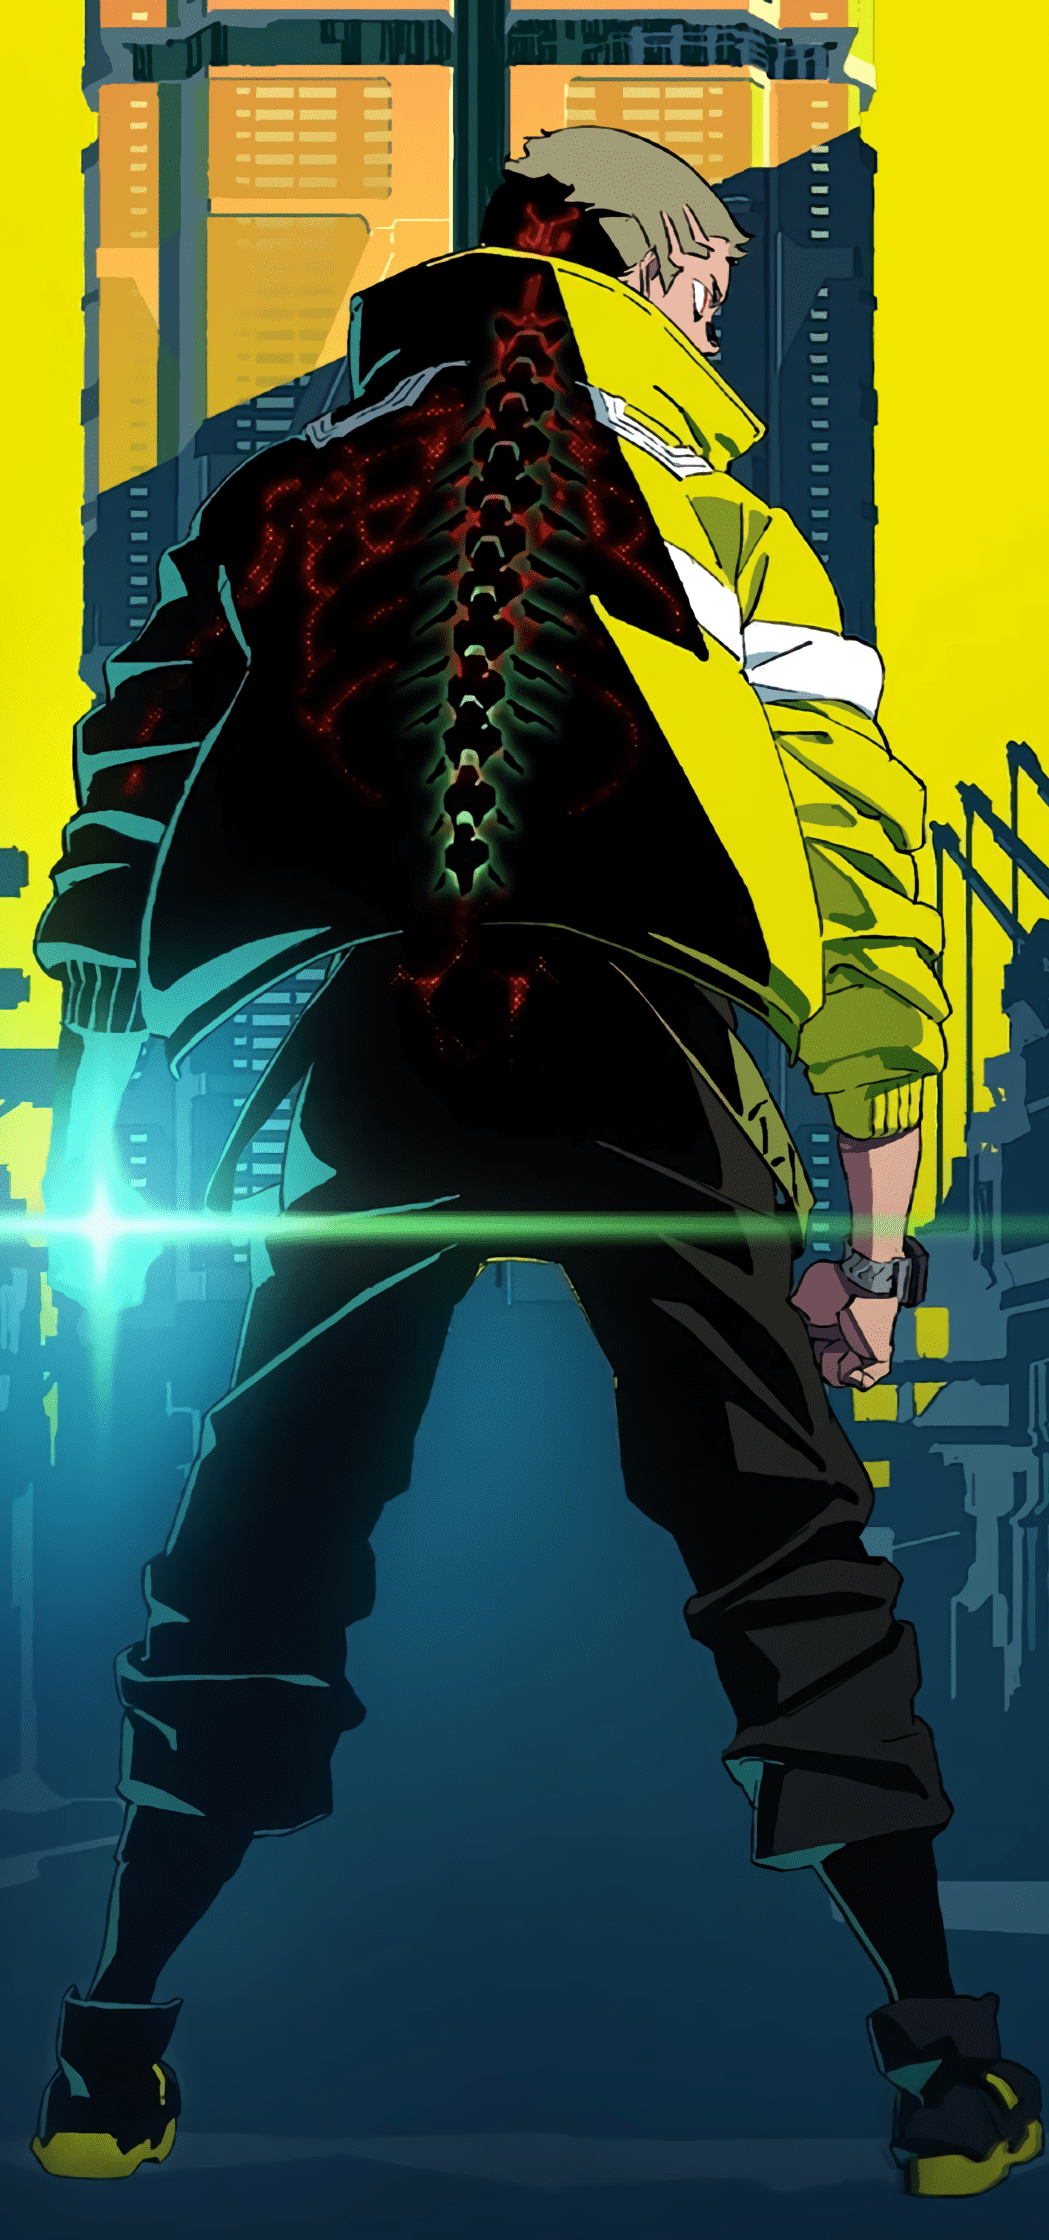 David art from Cyberpunk: Edgerunners anime 4K wallpaper download